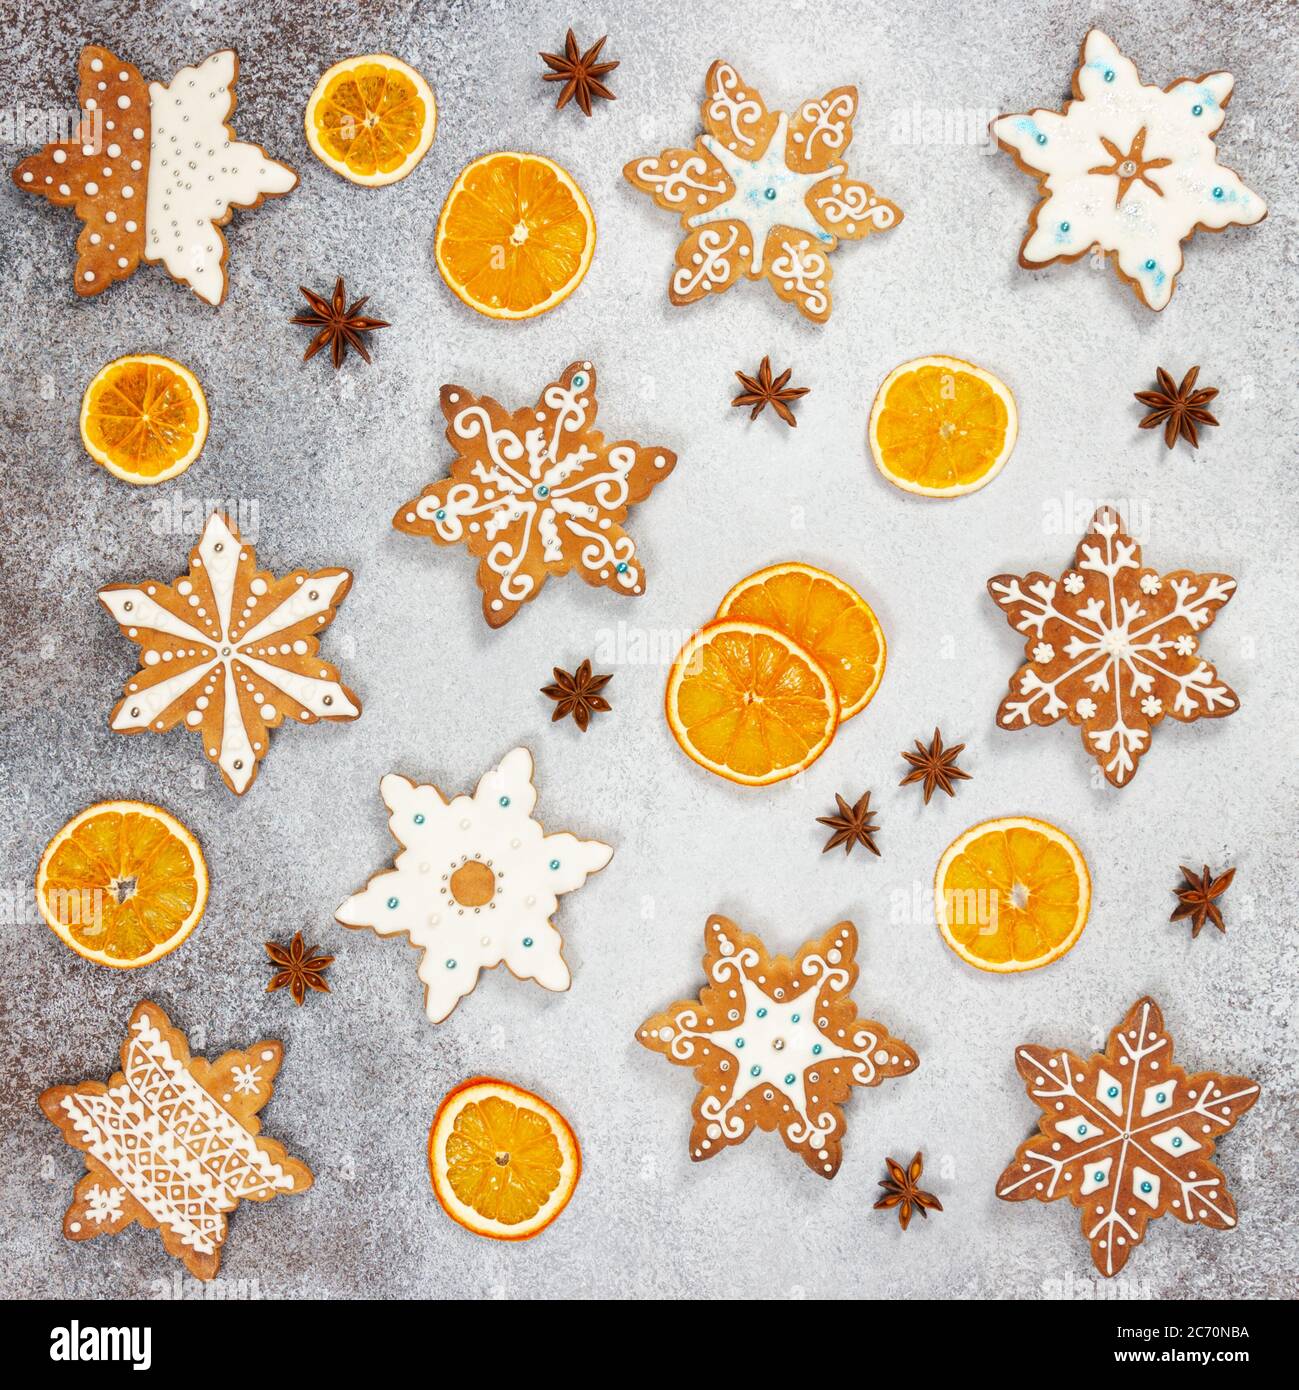 Biscotti allo zenzero di Natale nella forma fiocchi di neve, arancio secco e anice stellato su fondo di pietra grigia. Vista dall'alto. Foto Stock